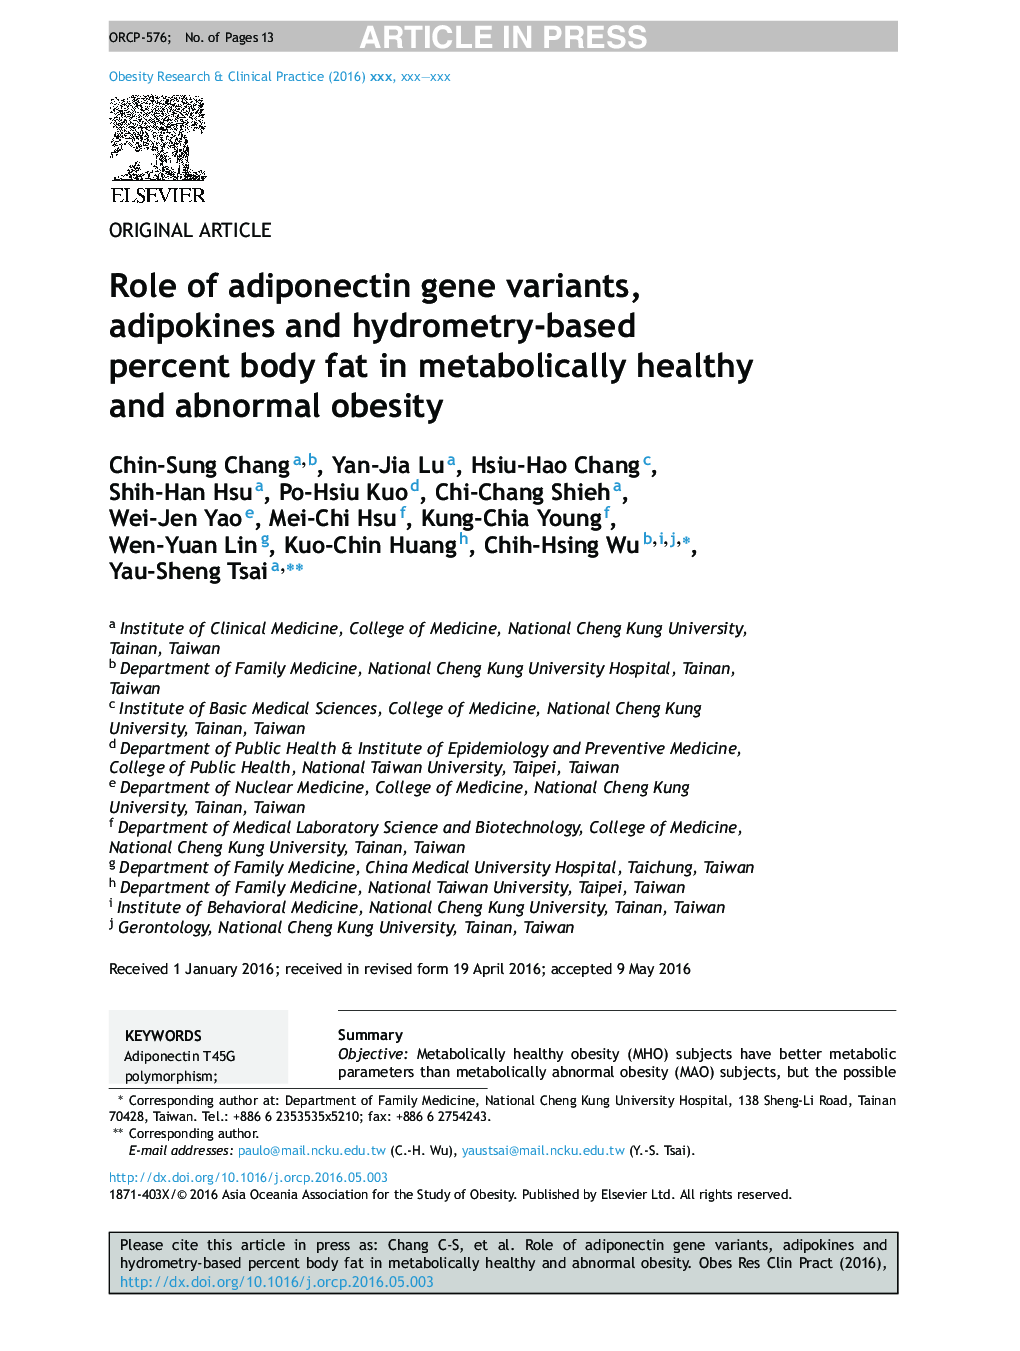 نقش انواع ژن آدیپونکتین، آدیپوکین ها و درصد چربی بدن بر اساس هیدرومتری در چاقی متابولیک سالم و غیر طبیعی 